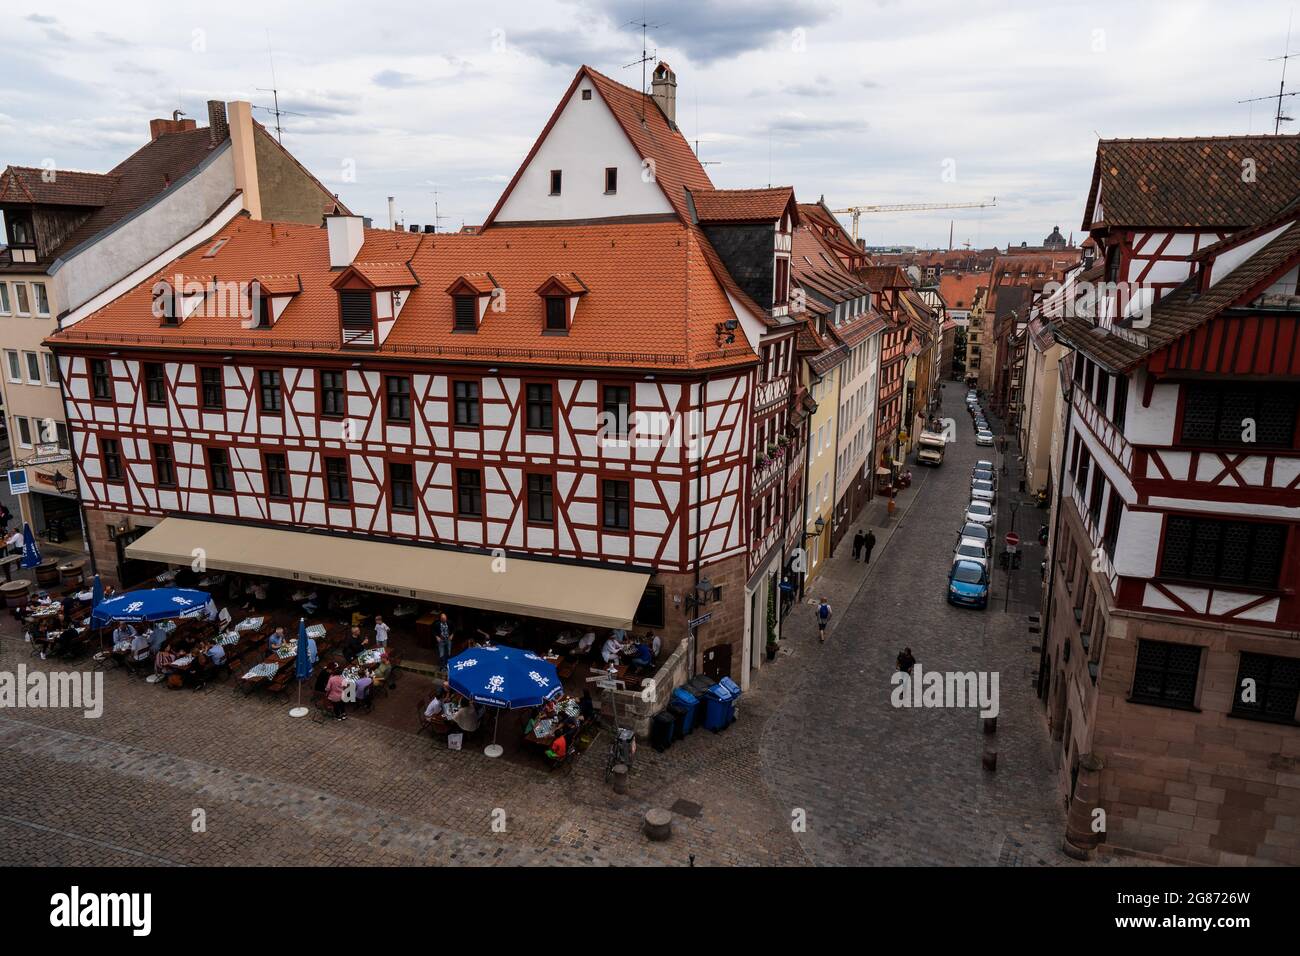 Nurnberg/Nuremberg Old Town Stock Photo